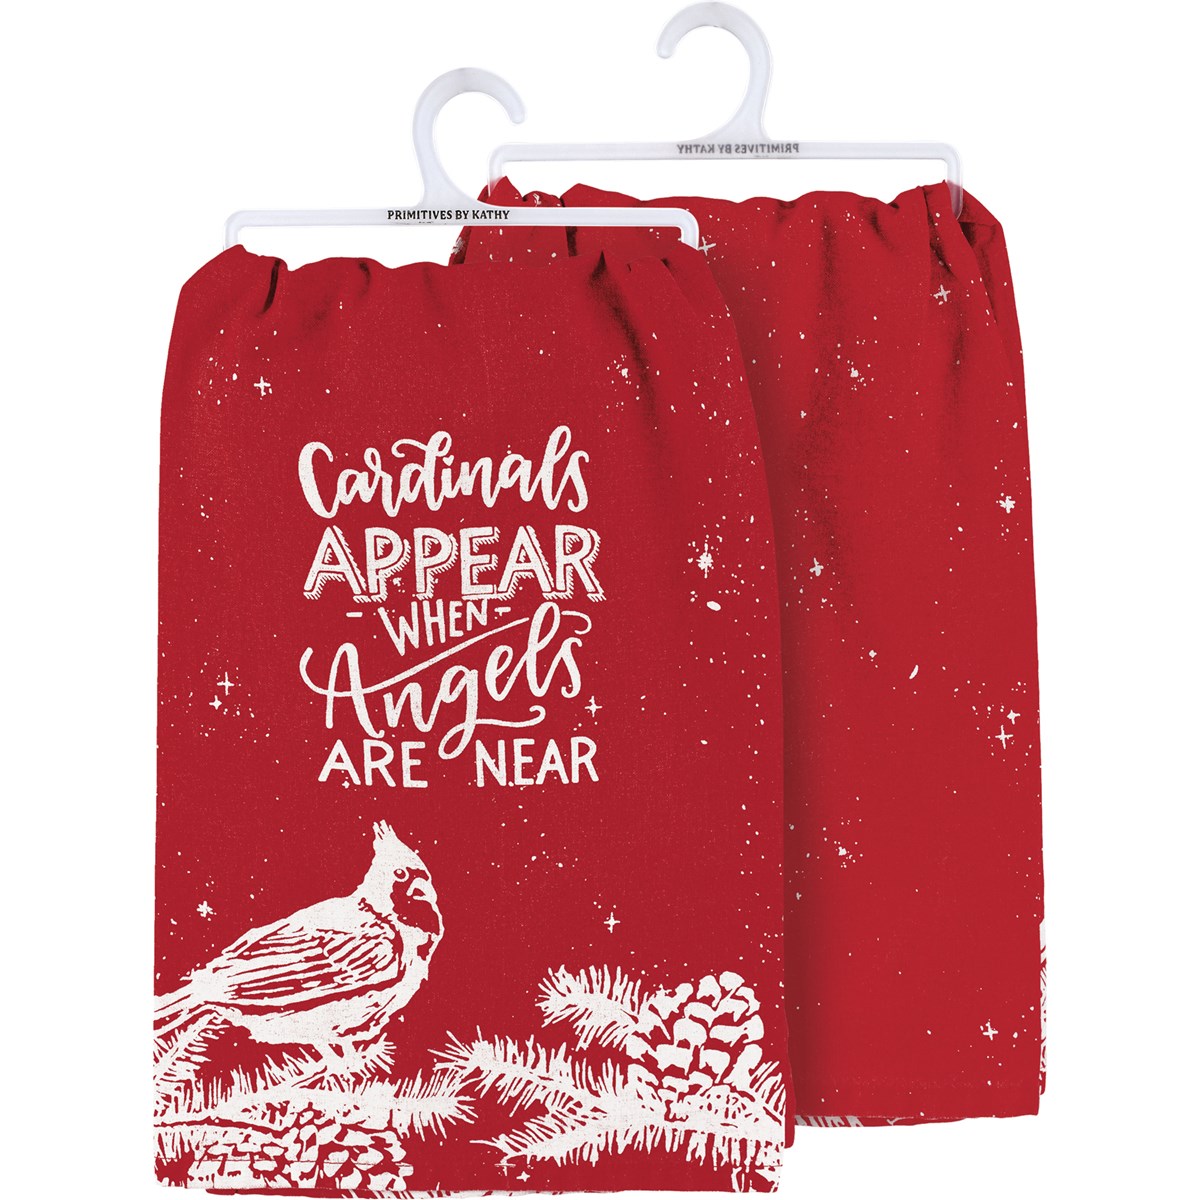 Cardinals Appear Kitchen Towel - Cotton